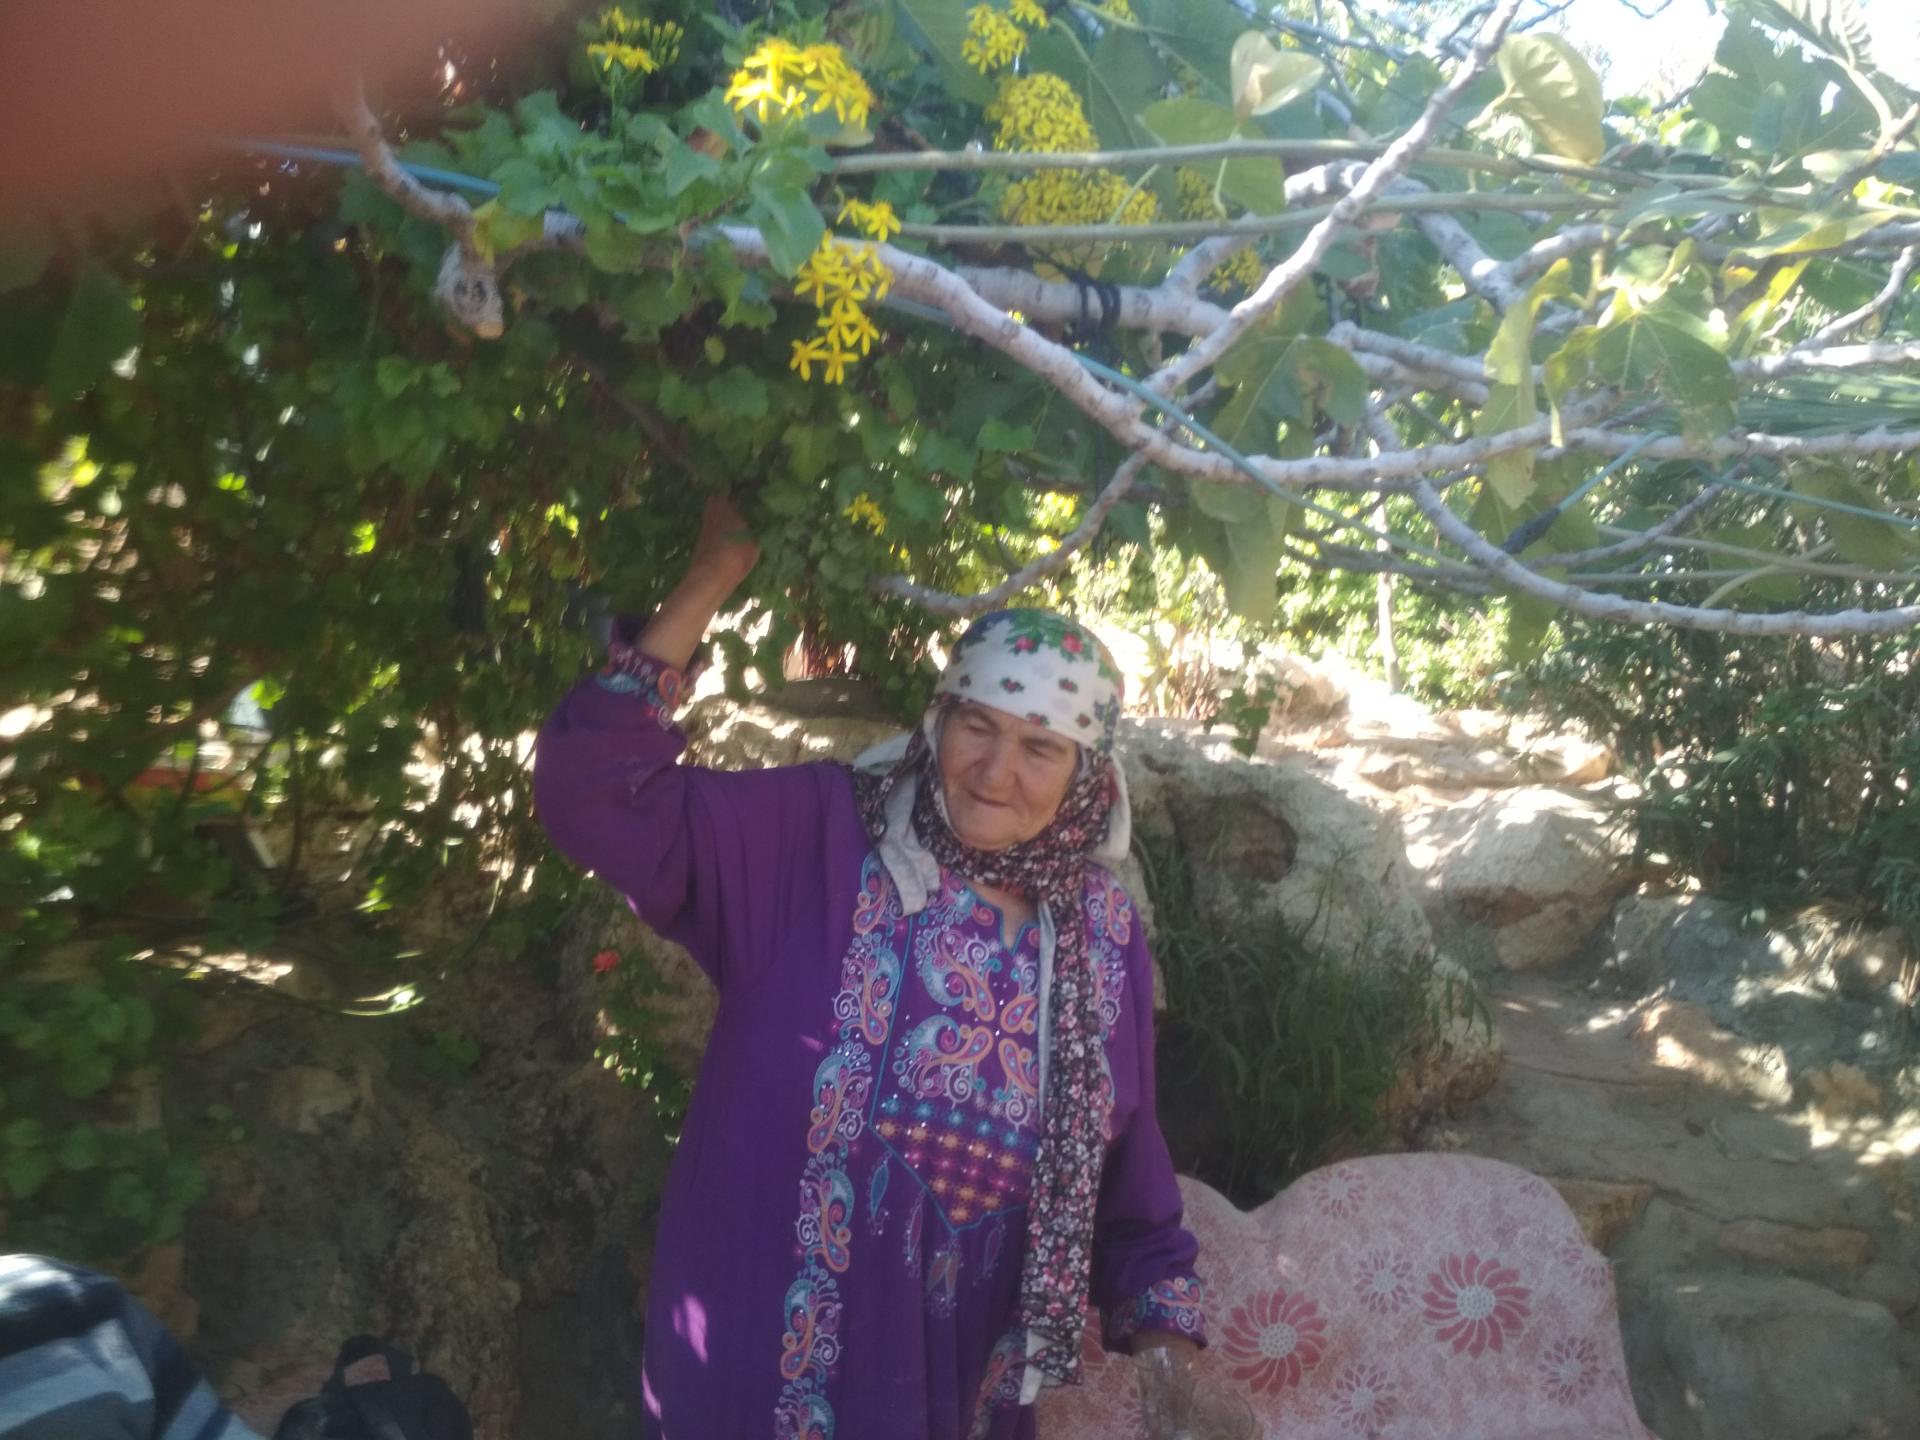 בקעת הירדן: הסבתא סלמה למשפחת דרגמה בגינה הירוקה שלה